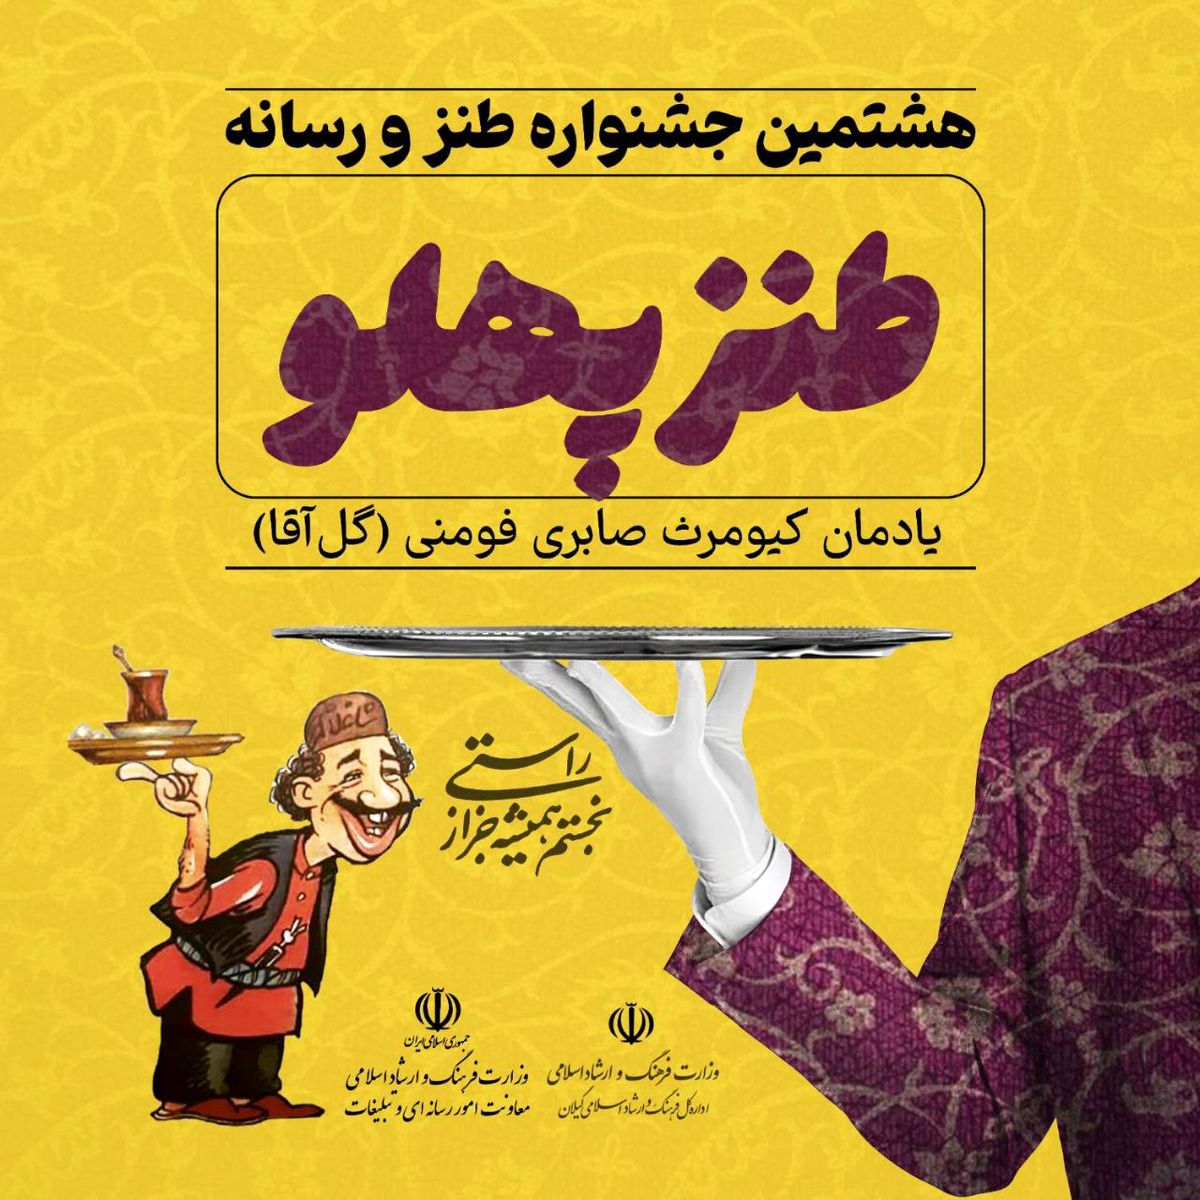 ۳۱ فروردین آخرین مهلت هشتمین جشنواره ملی طنز و رسانه "طنزپهلو"